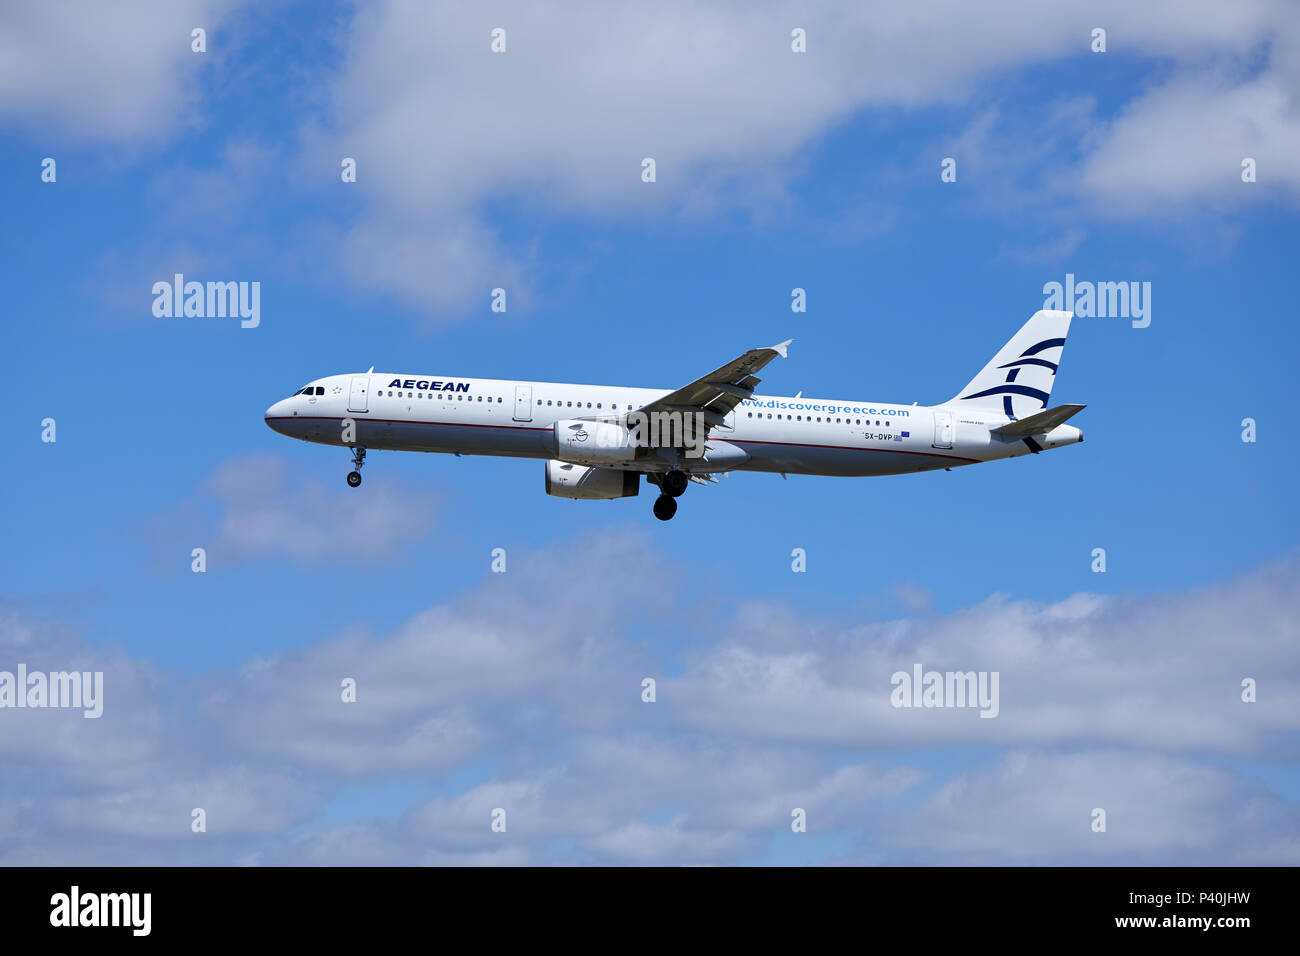 Aegean Airlines un avion Airbus A321-231, numéro d'immatriculation SX-DVP, approche d'un atterrissage. Banque D'Images